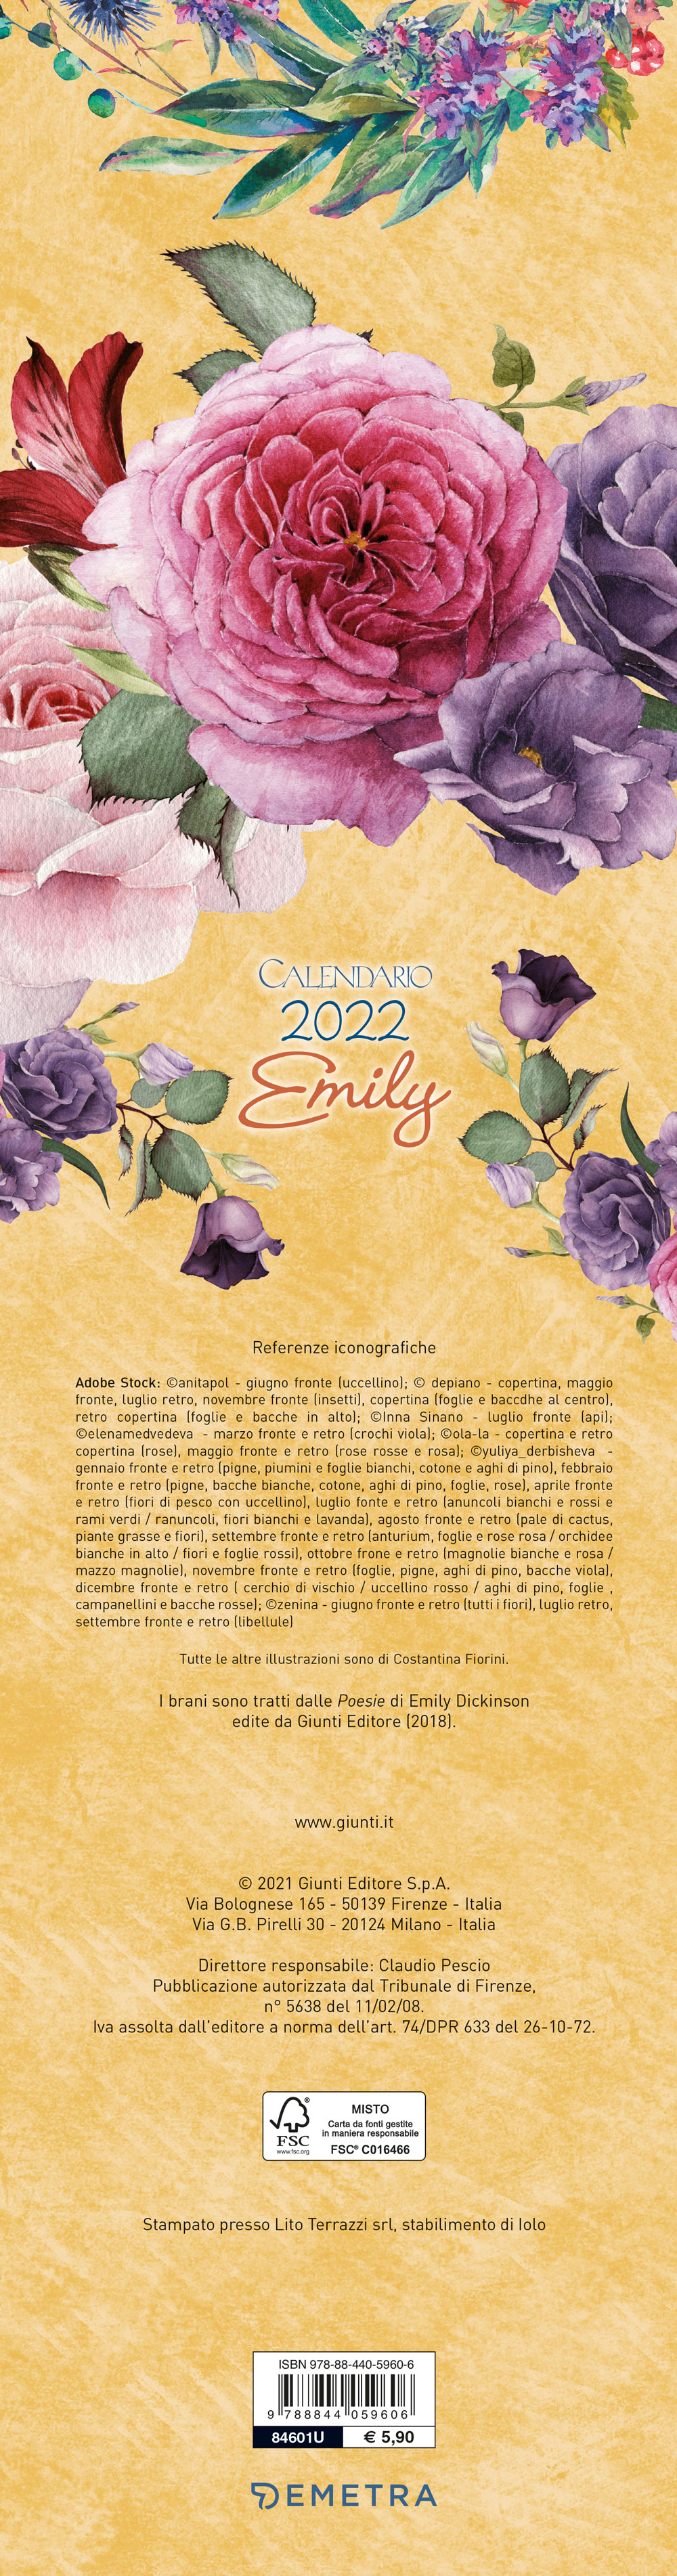 Calendario Emily stretto 2022